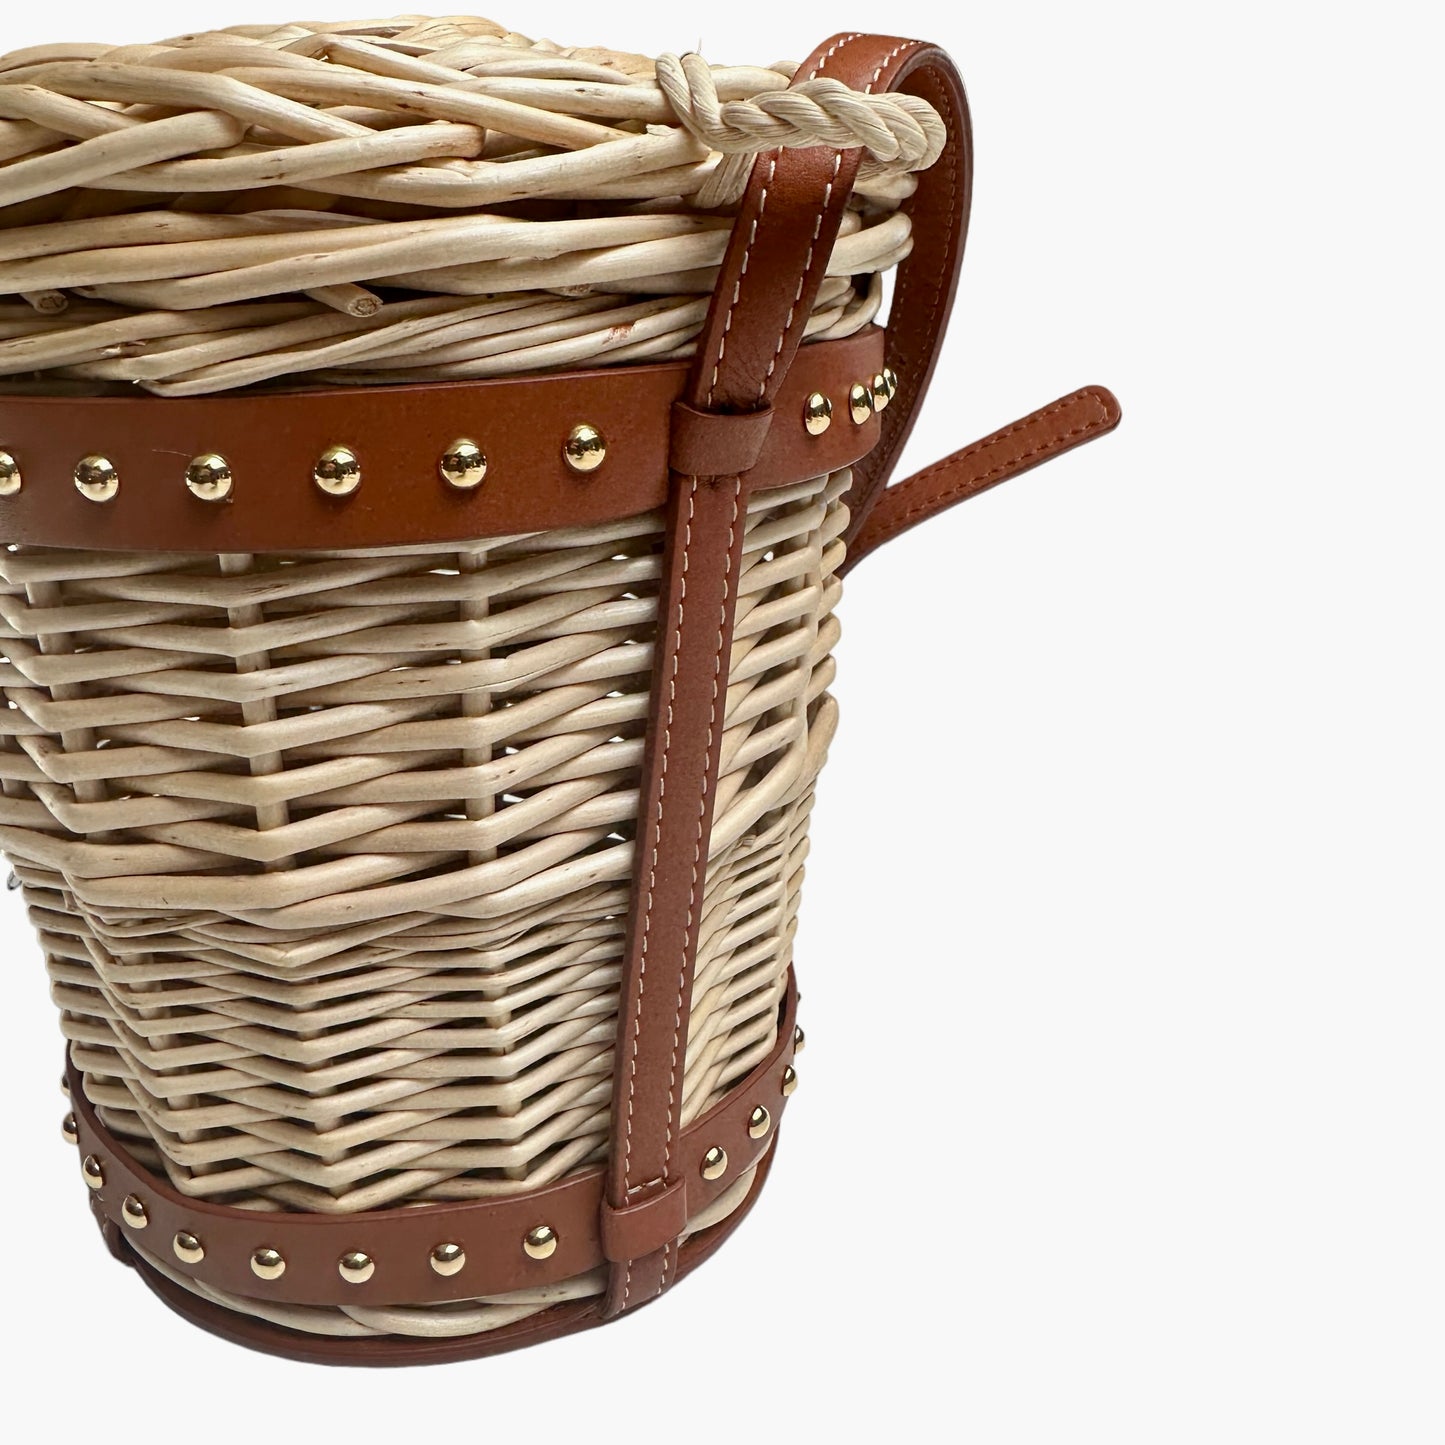 2020 Basket Bag